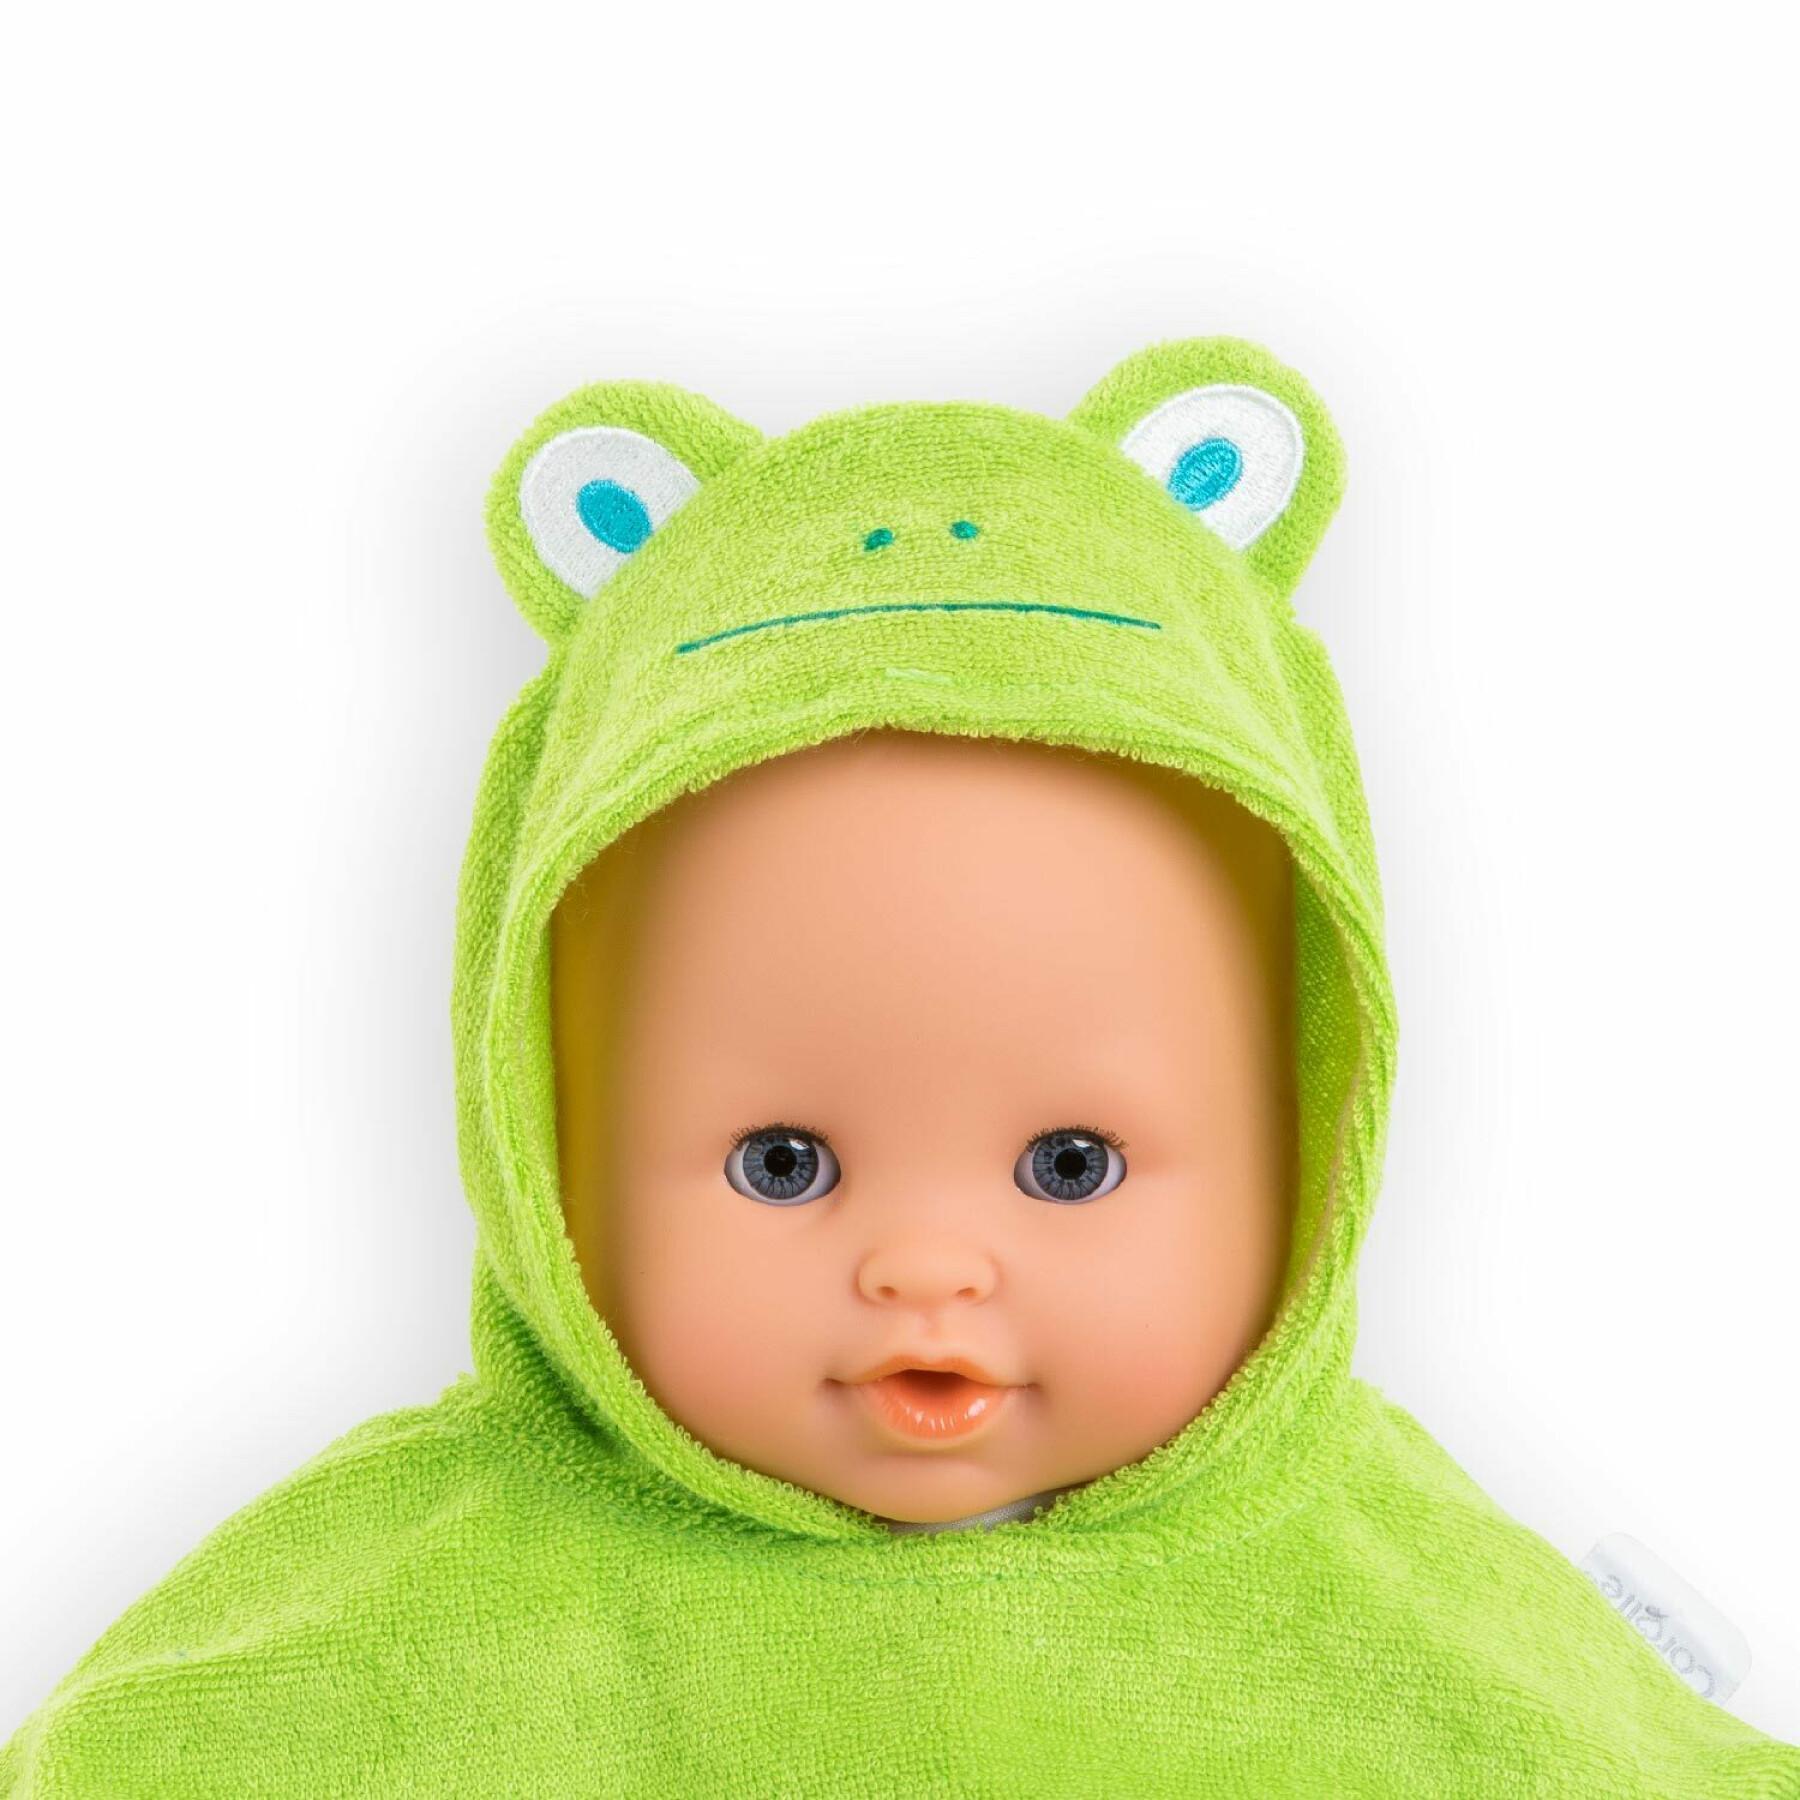 Peleryna kąpielowa dla dziecka w kształcie żaby Corolle